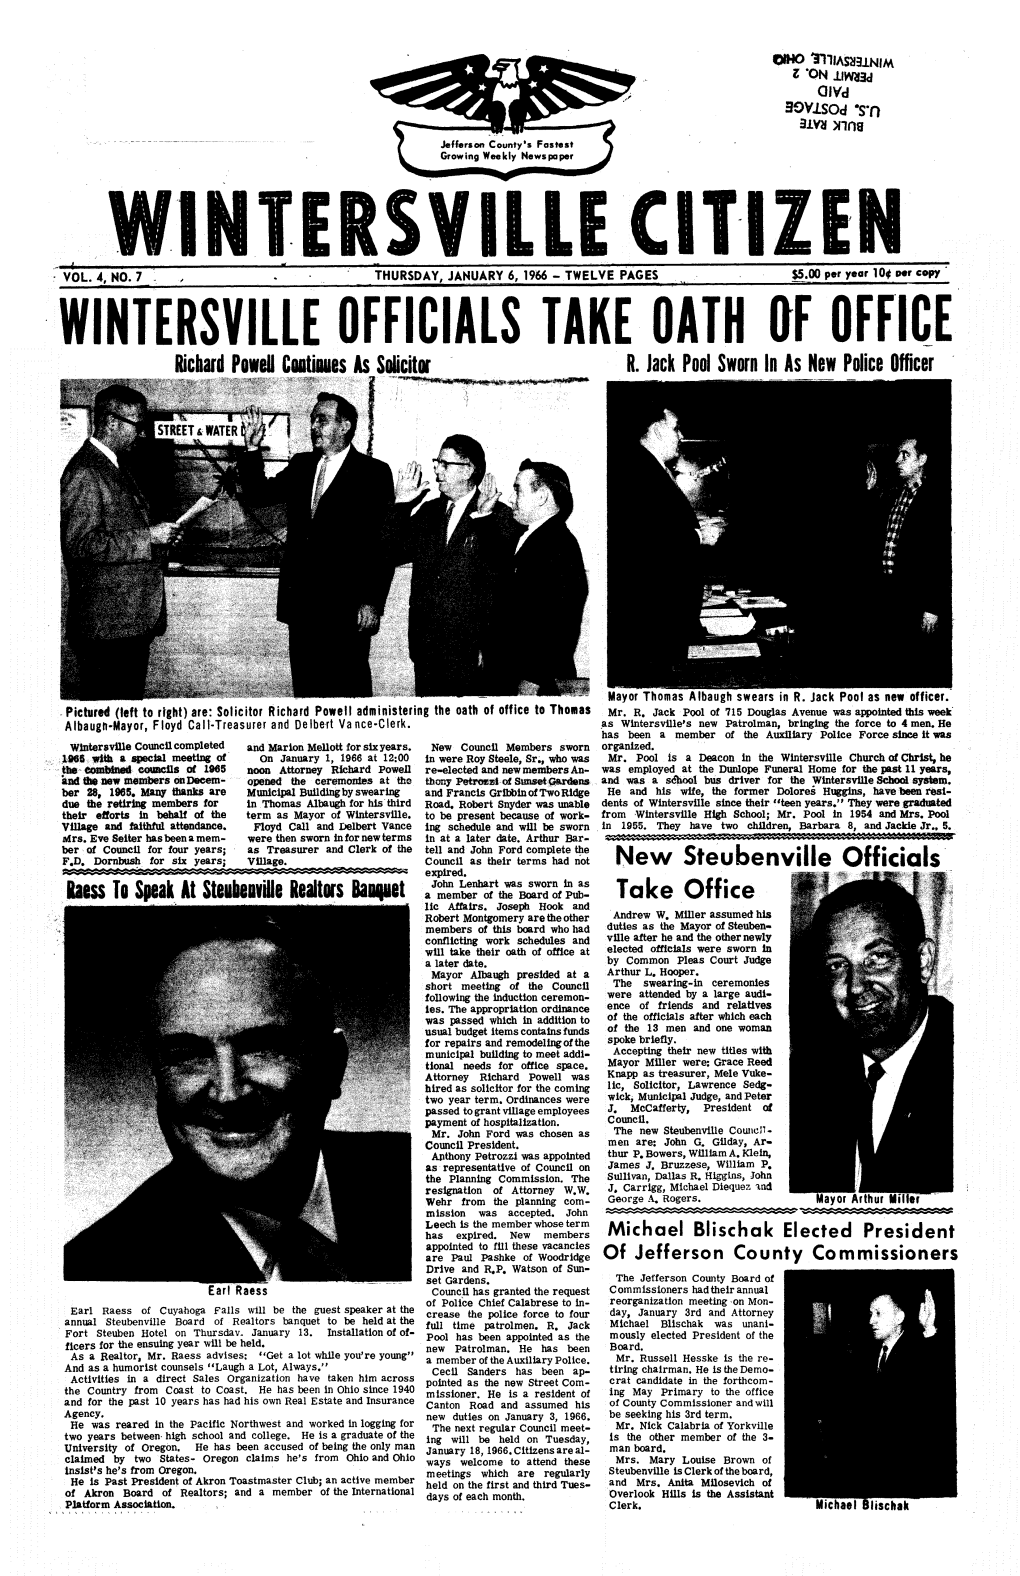 Wintersville Officials Take Oath of Offi(Pe